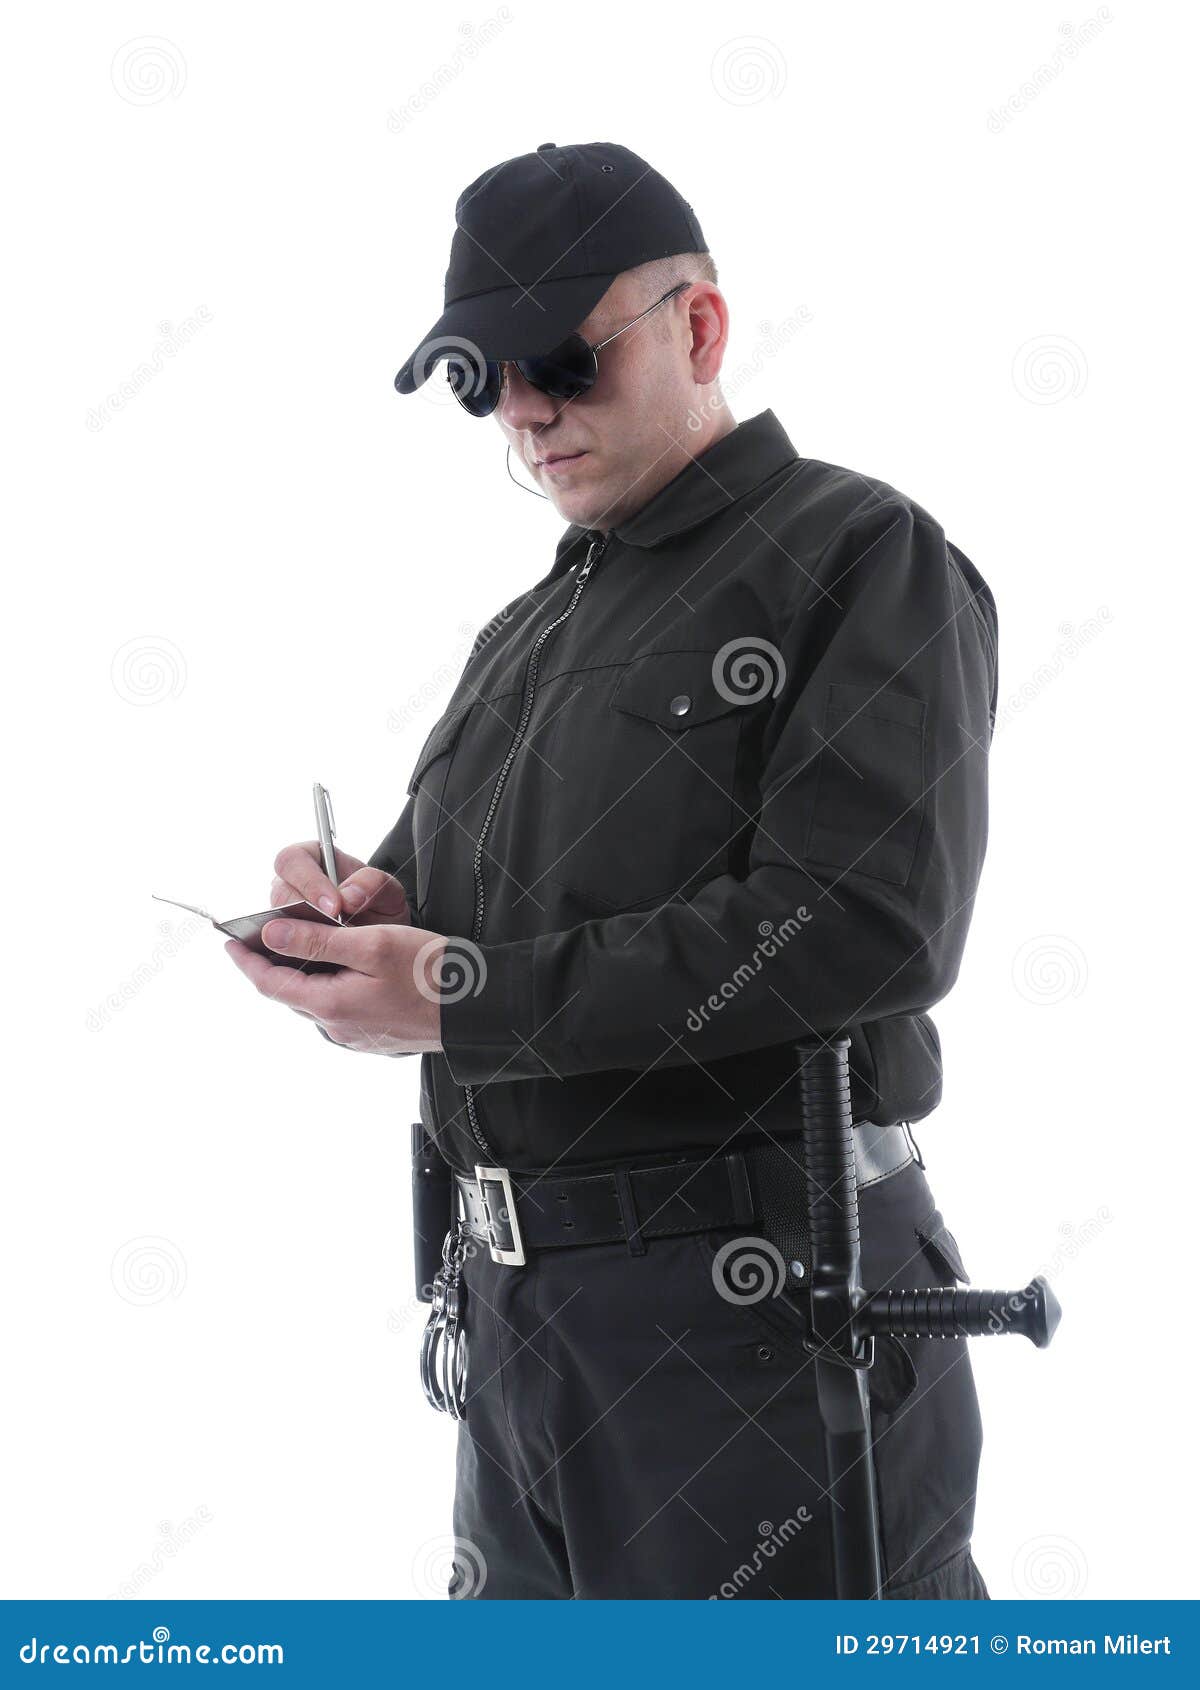 policeman taking notes